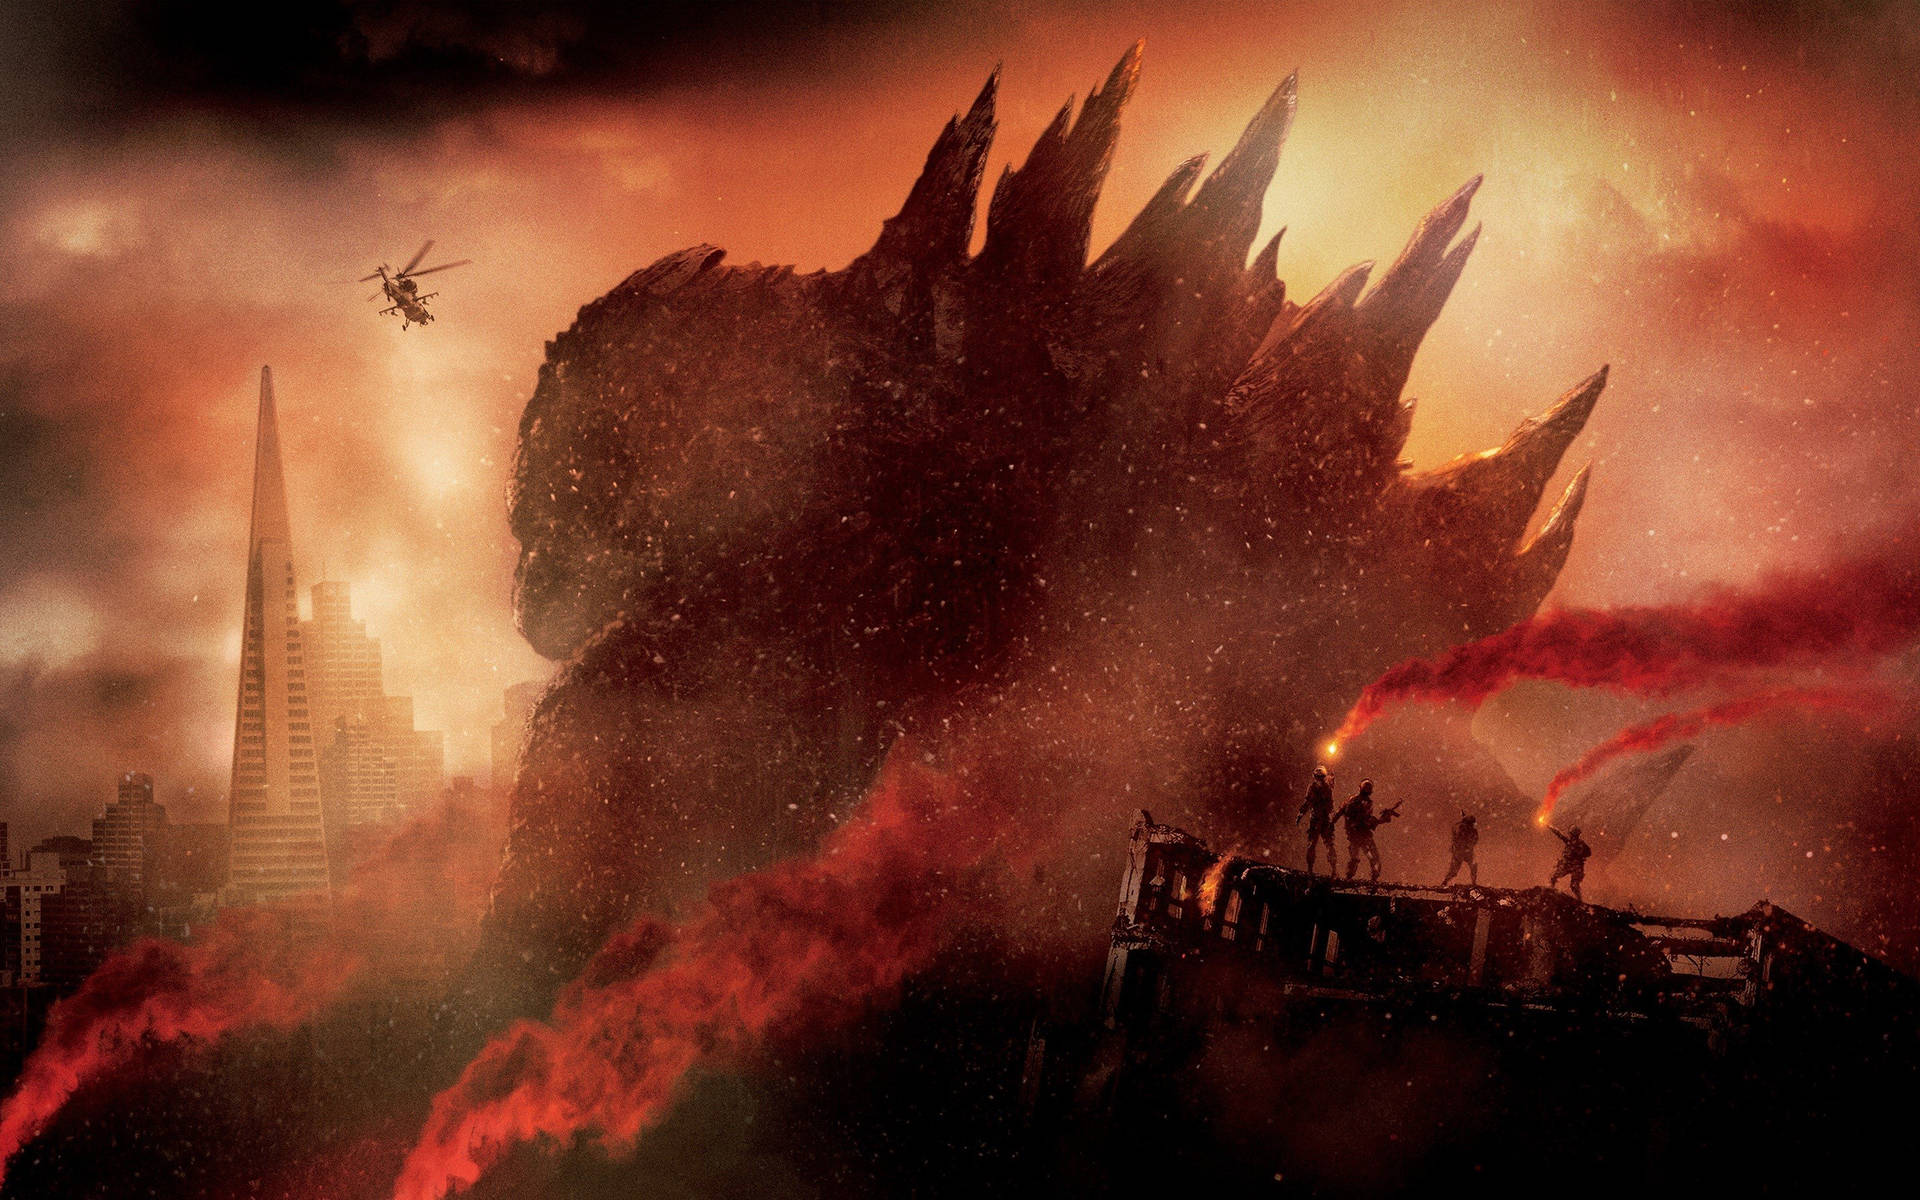 "The Iconic Shin Godzilla." Wallpaper